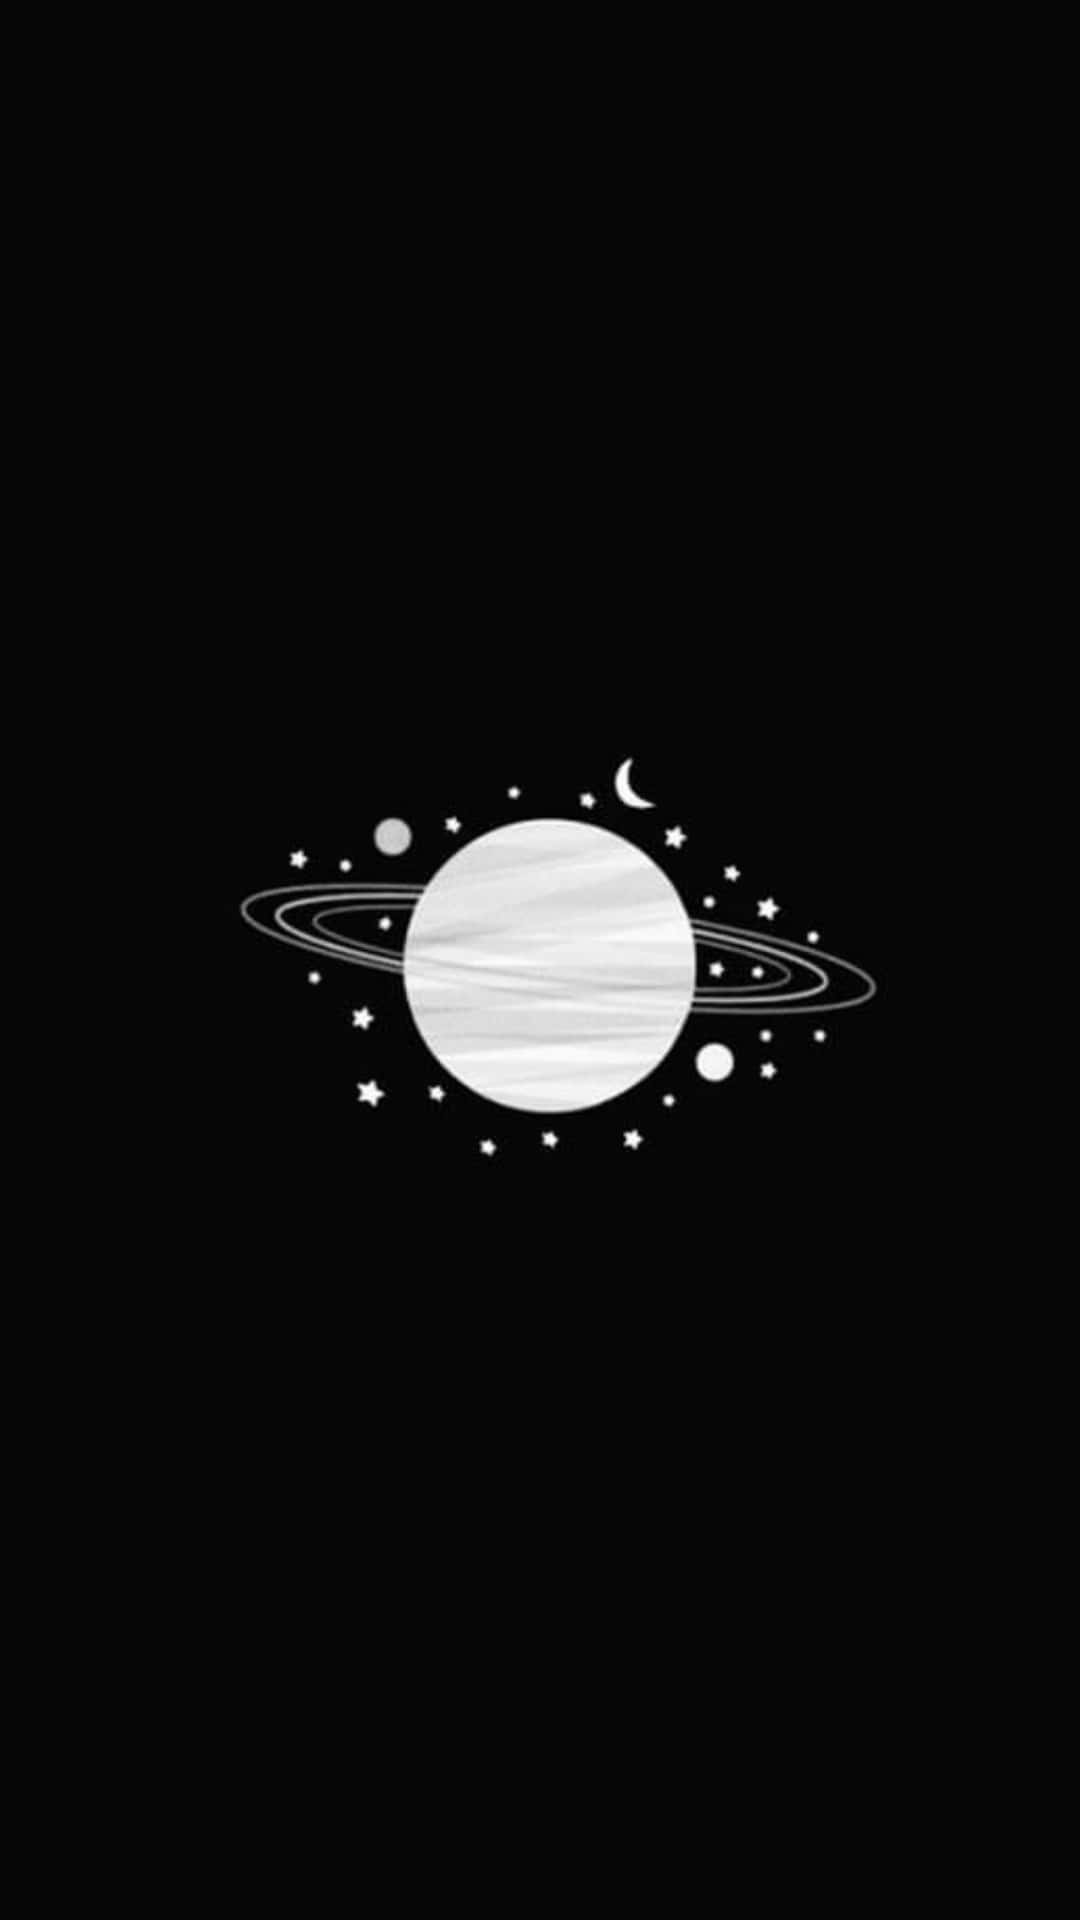 Ilustracióndel Planeta Saturno En Un Estético Fondo Negro.